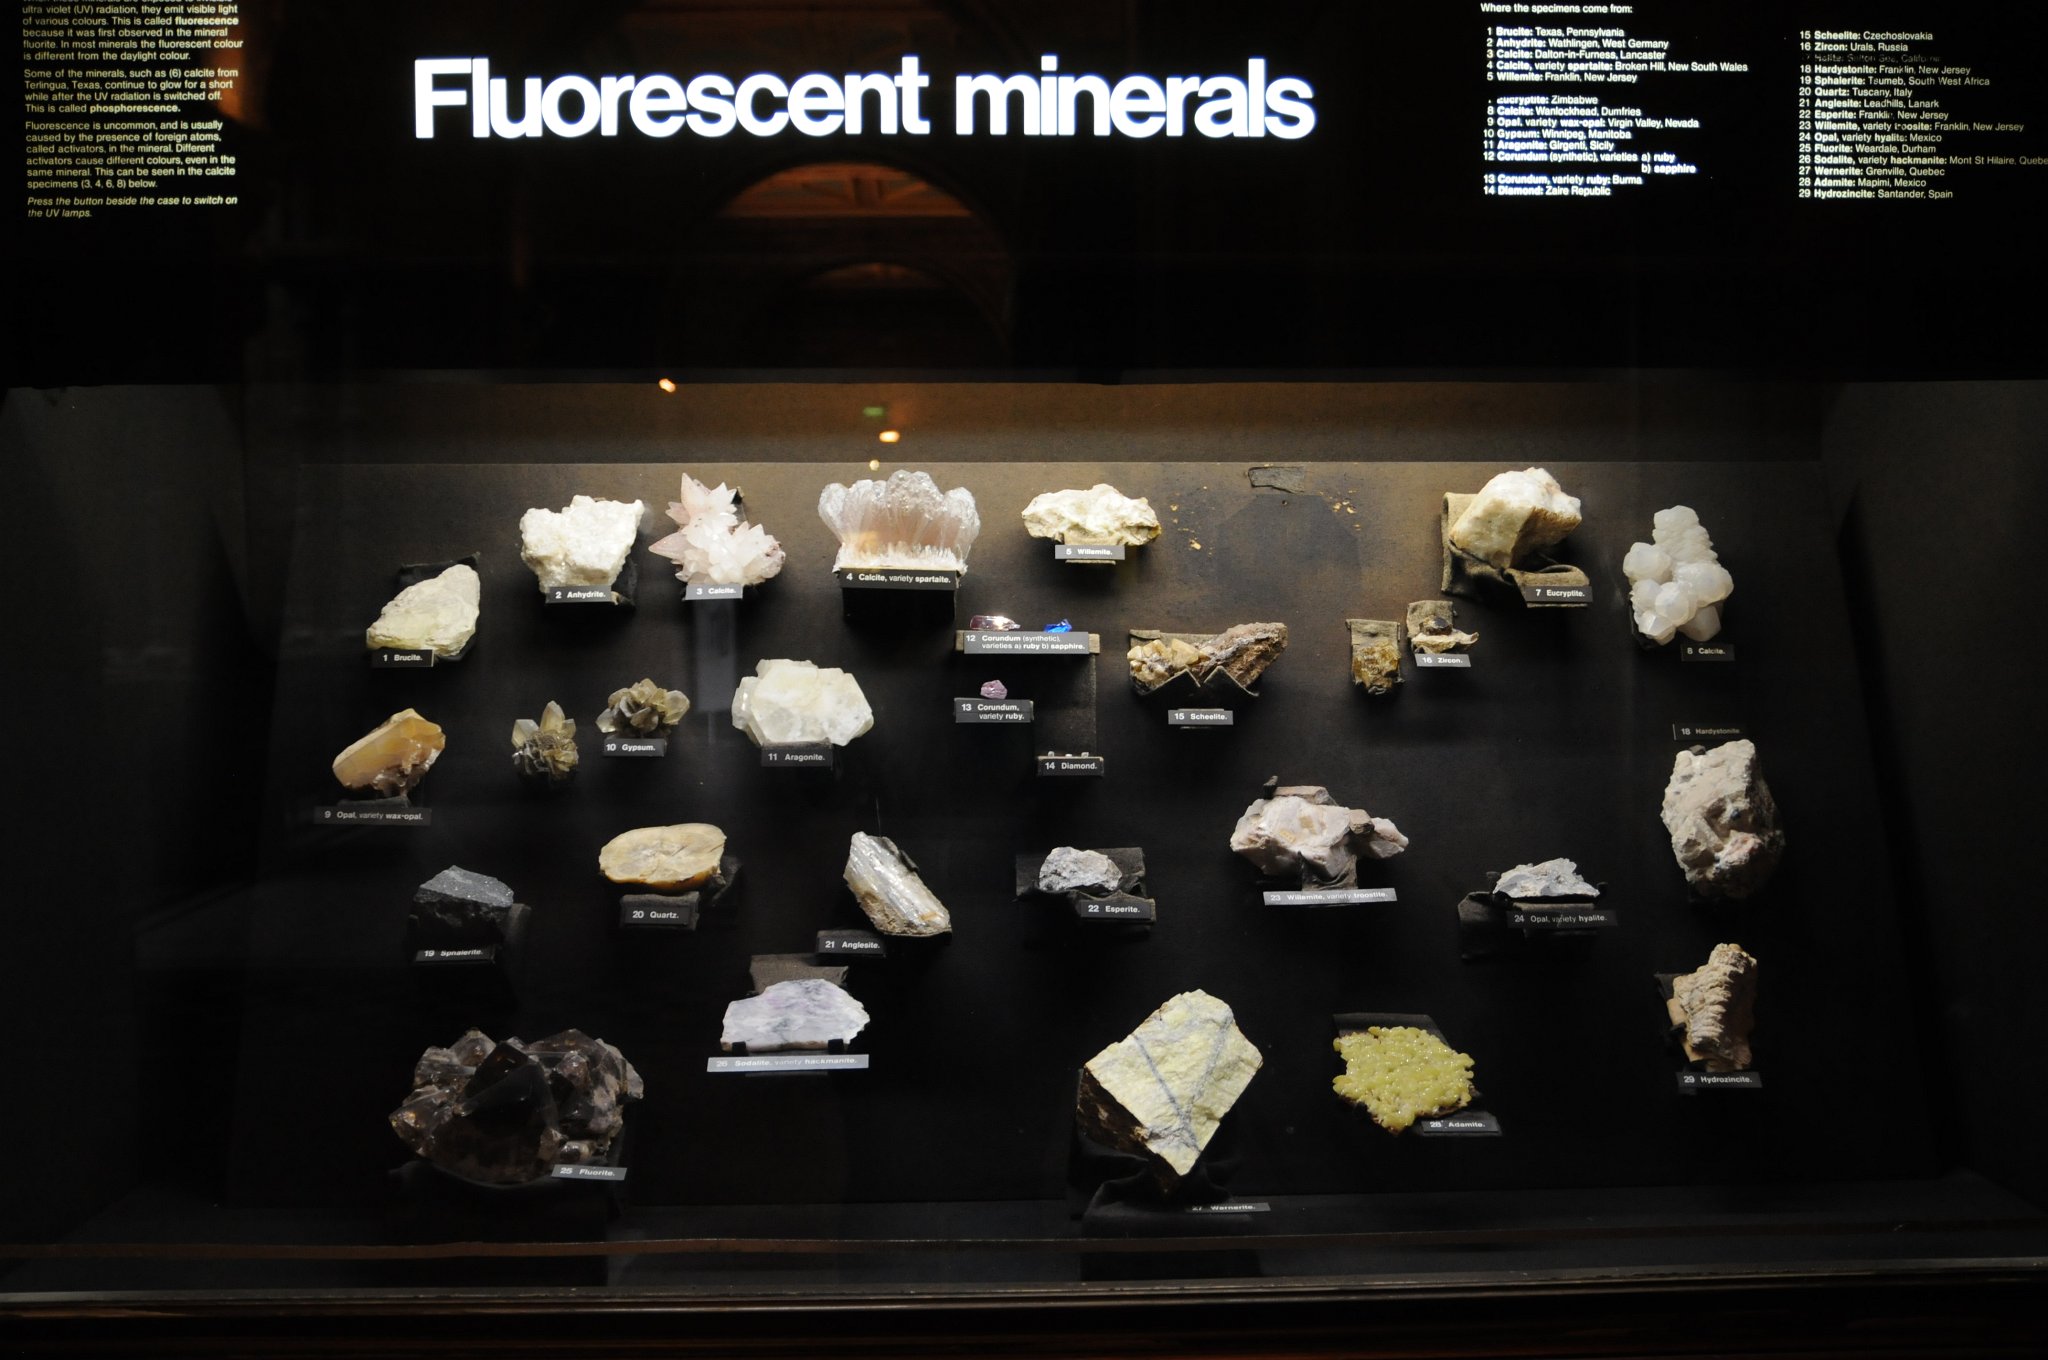 DSC_7433.JPG - Fluorescentní minerály. Například Korund (safír, rubín, lukosafír, smirek), Willemit, Hyalit (neboli skelný opál), Sodalit, Diamant, Fluorit, Křemen, Sádrovec, Kalcit, Anhydrit (síran vápenatý) a další.